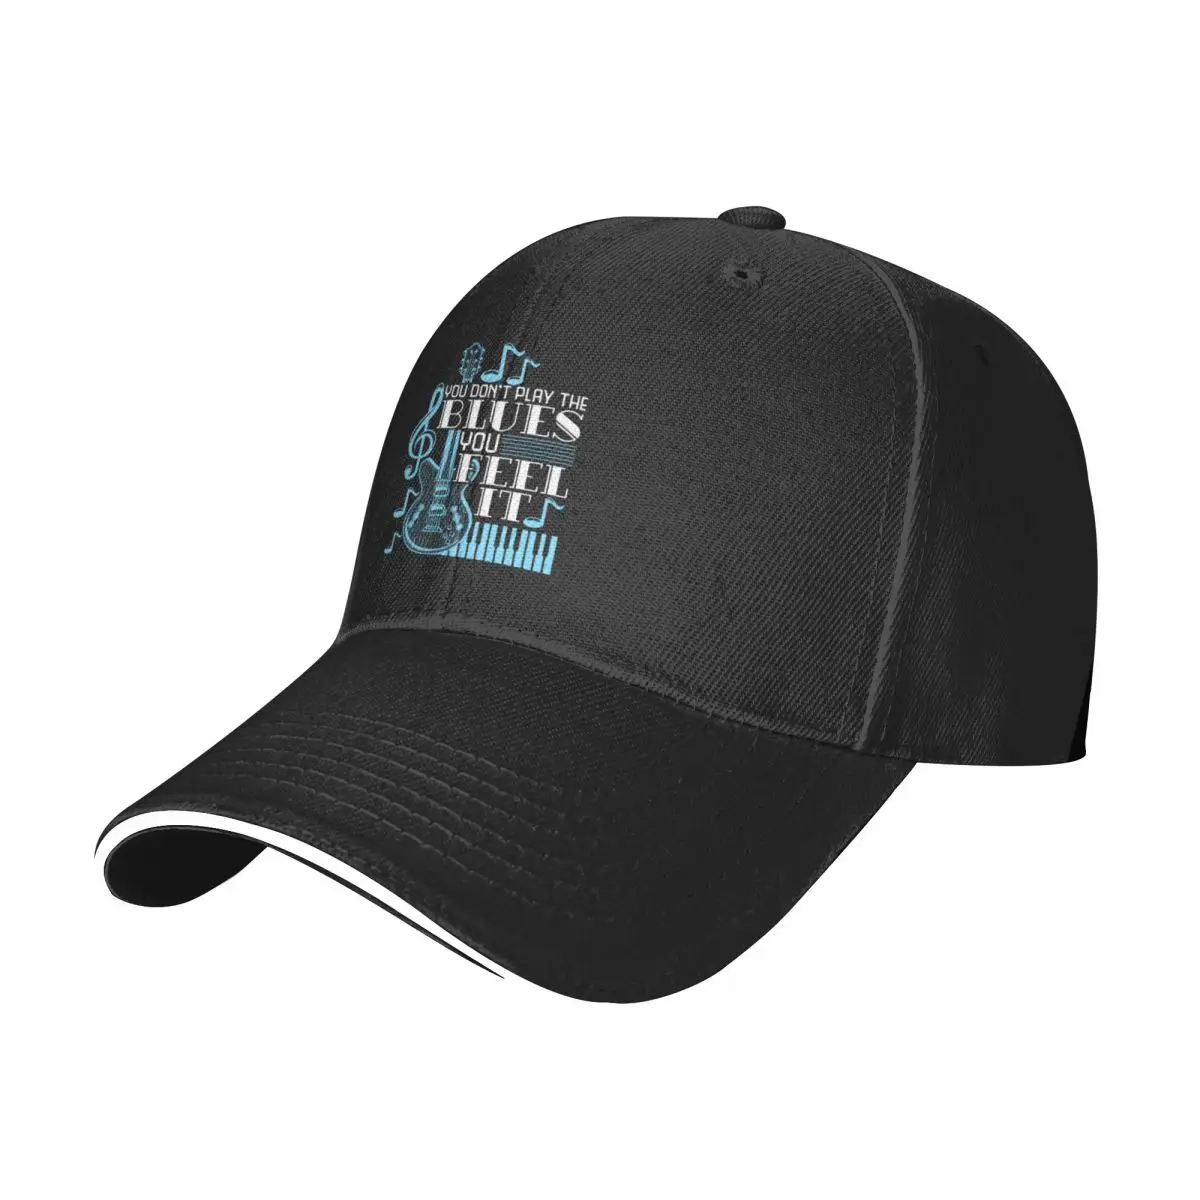 

New Blues Music Musician Gifts Guitar Musical NotesCap Baseball Cap Bobble hat horse hat Women's winter hat Men's